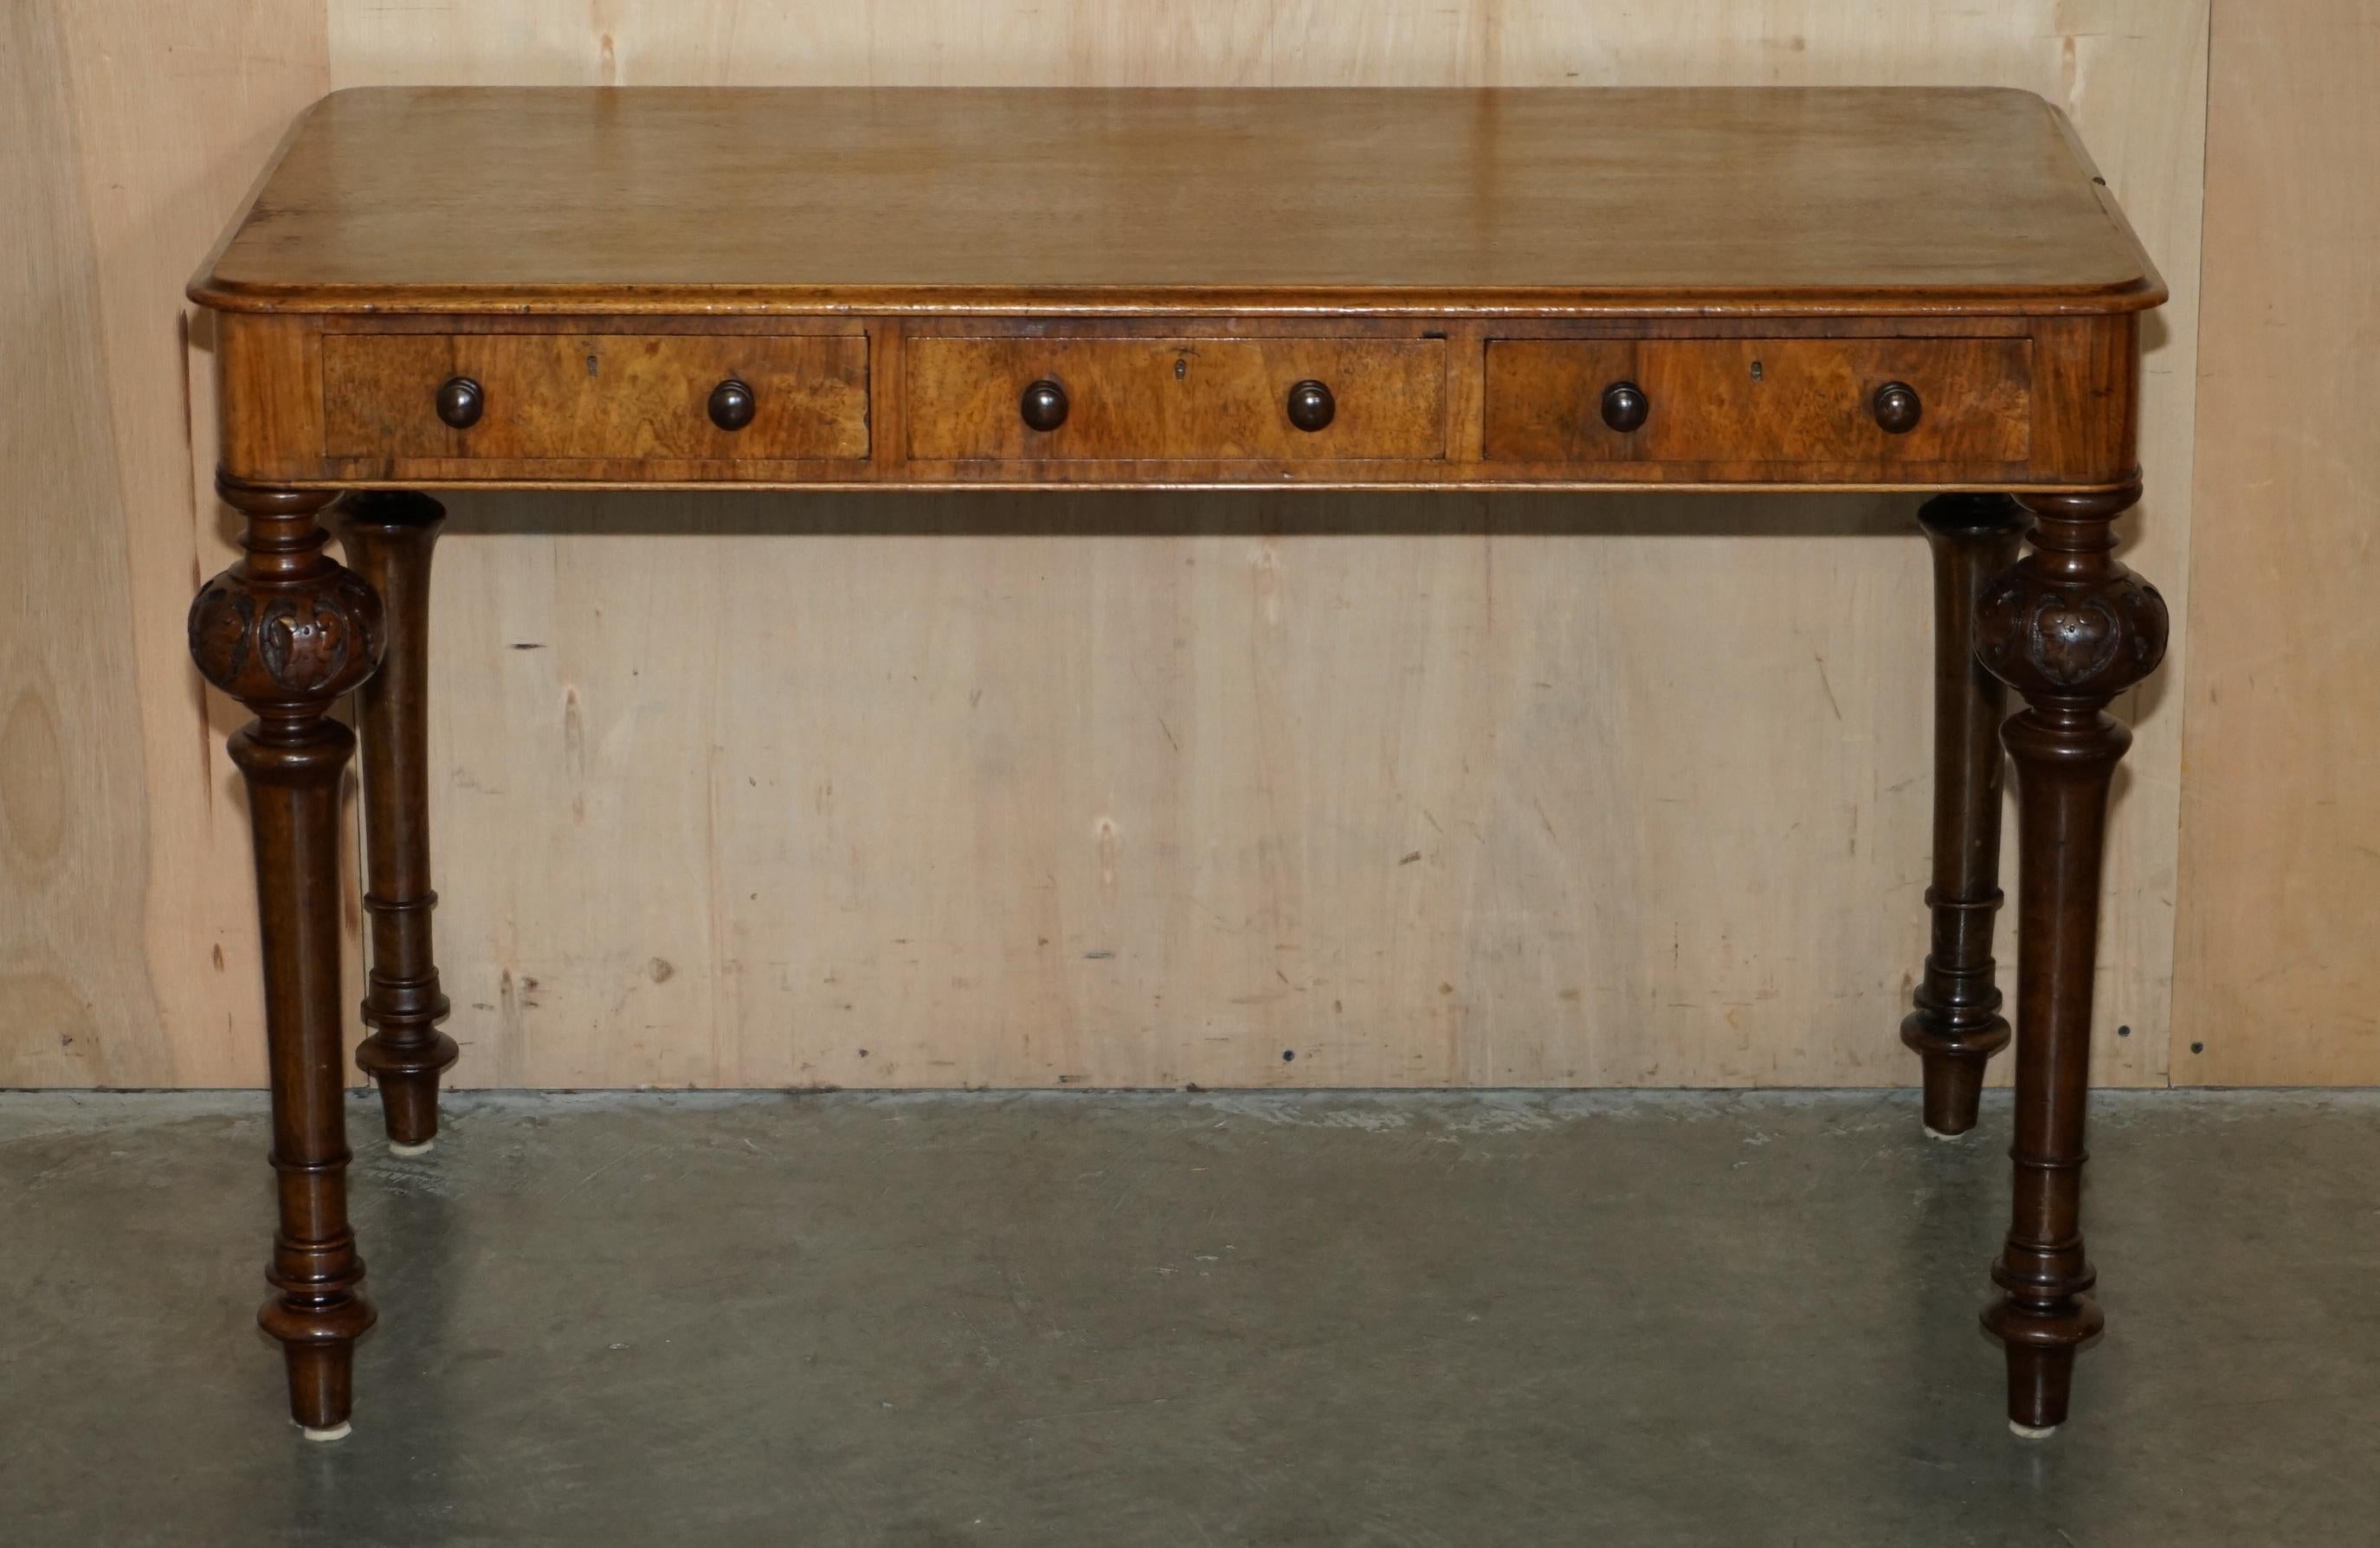 Royal House Antiques

The House Antiques a le plaisir de proposer à la vente cette superbe petite table à écrire en bois de rose William IV Circa 1830 à trois tiroirs.

Veuillez noter que les frais de livraison indiqués ne sont qu'un guide, ils